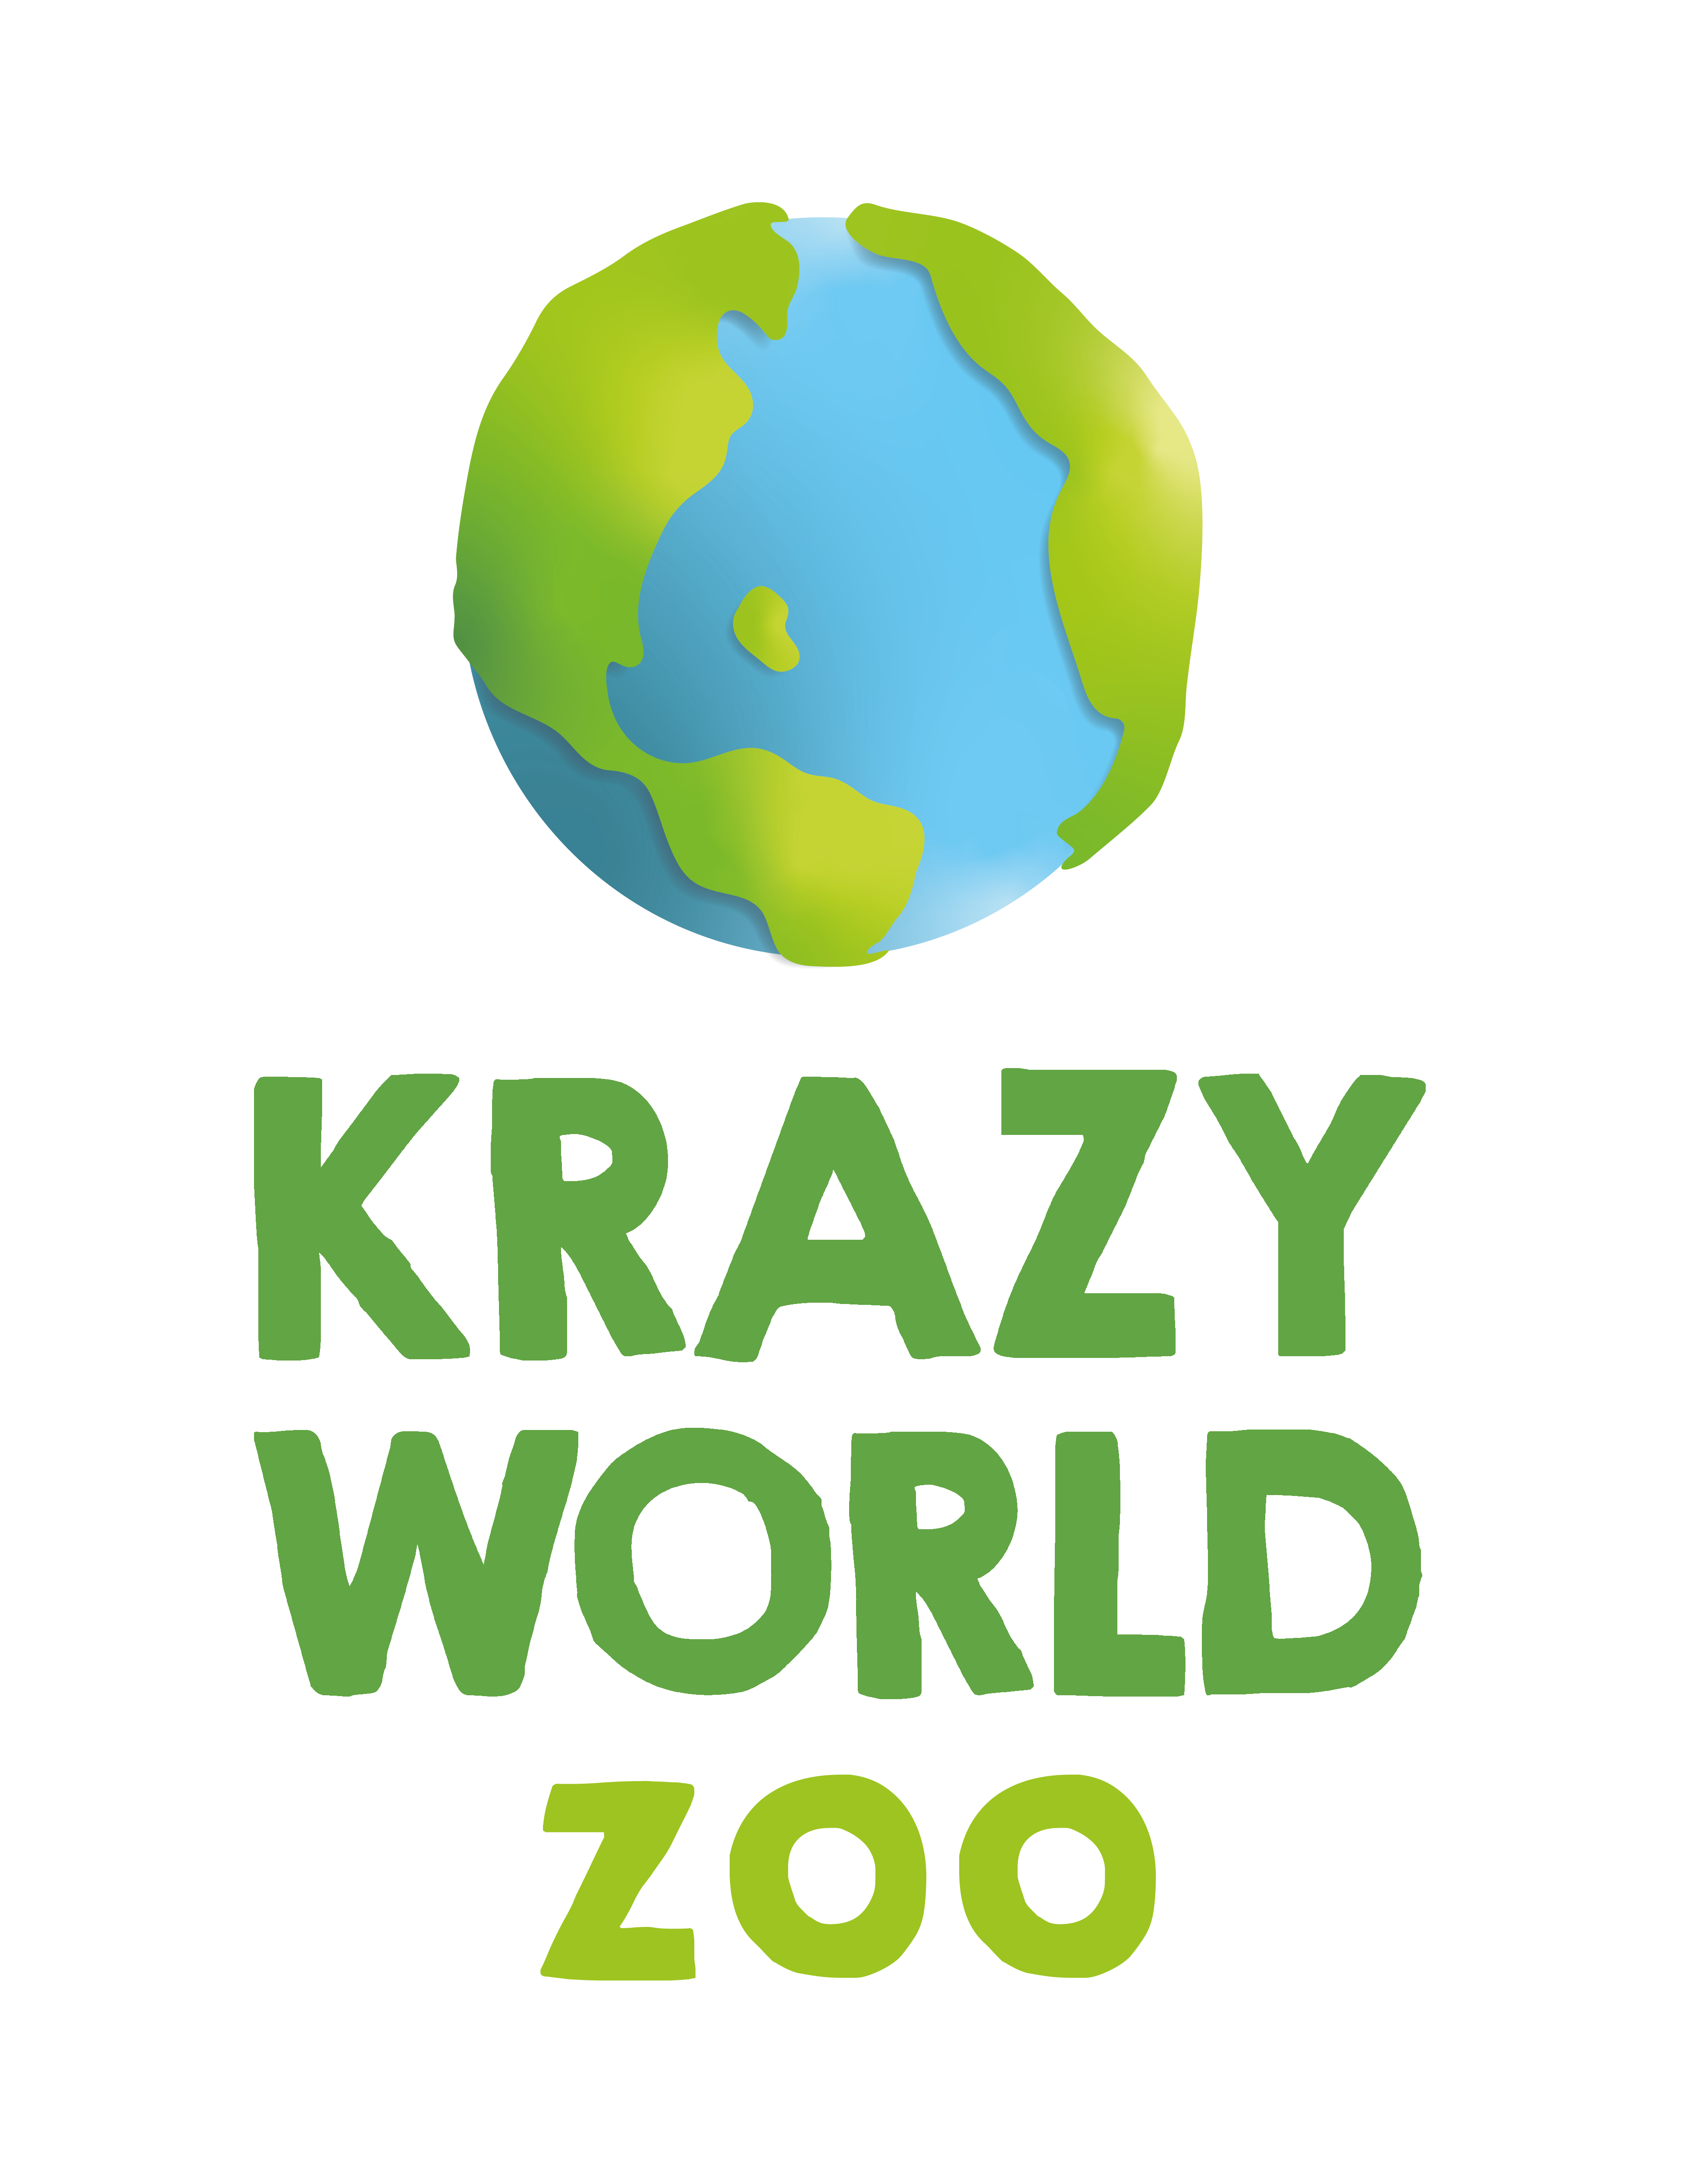 Krazy world zoo